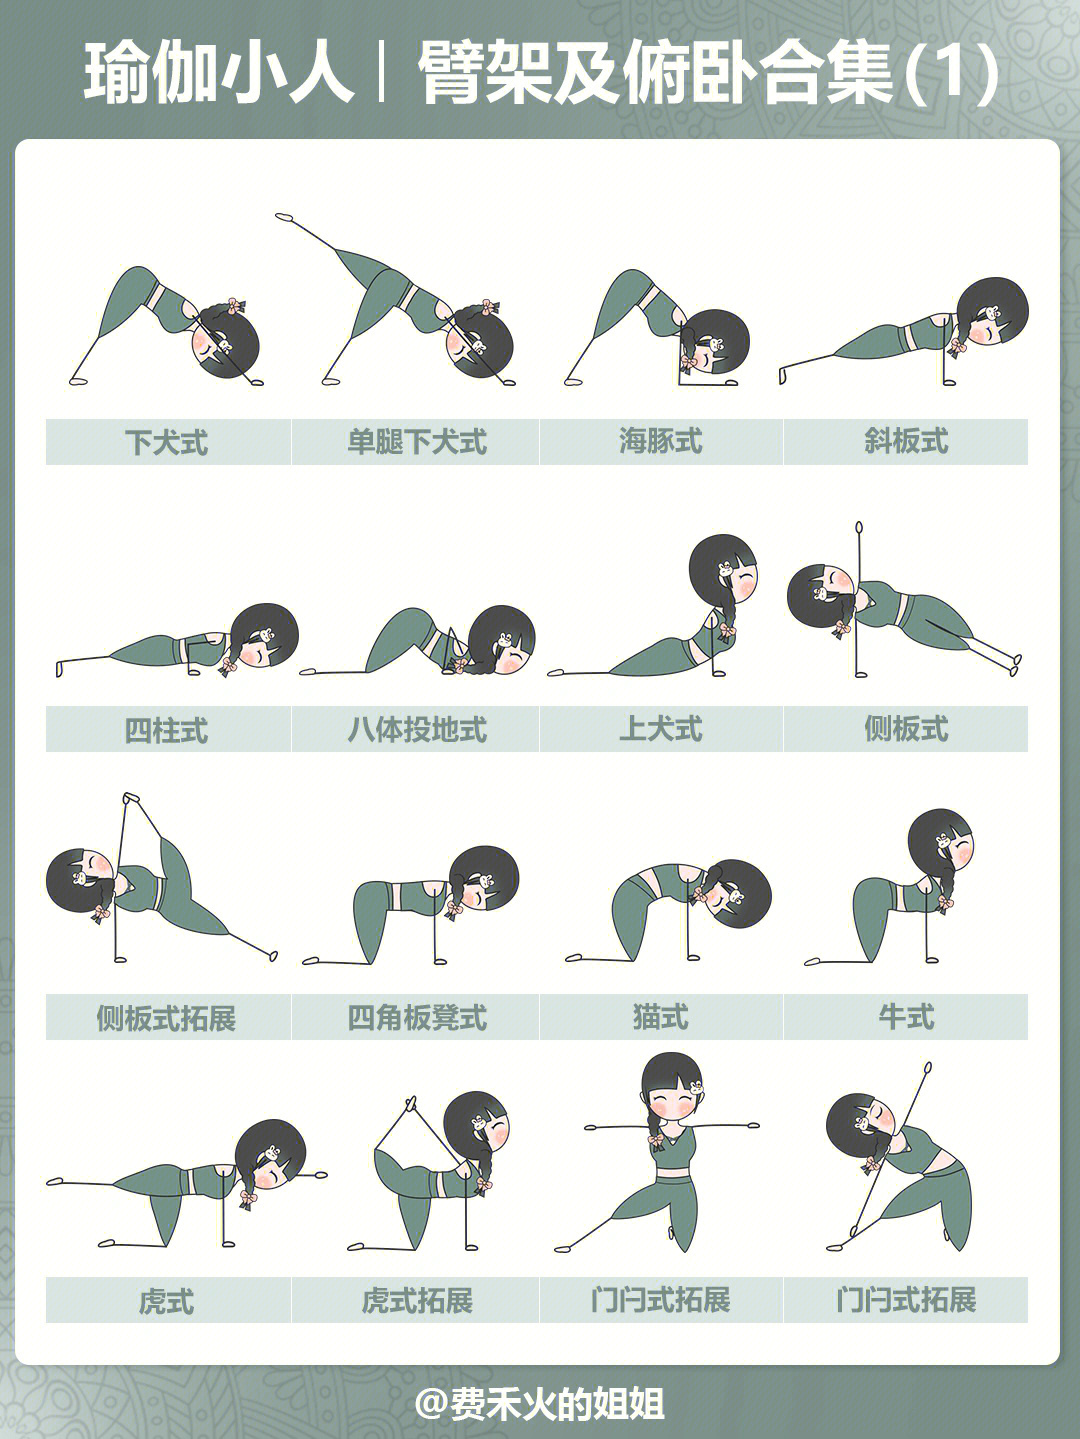 中文版全套瑜伽小人图图片